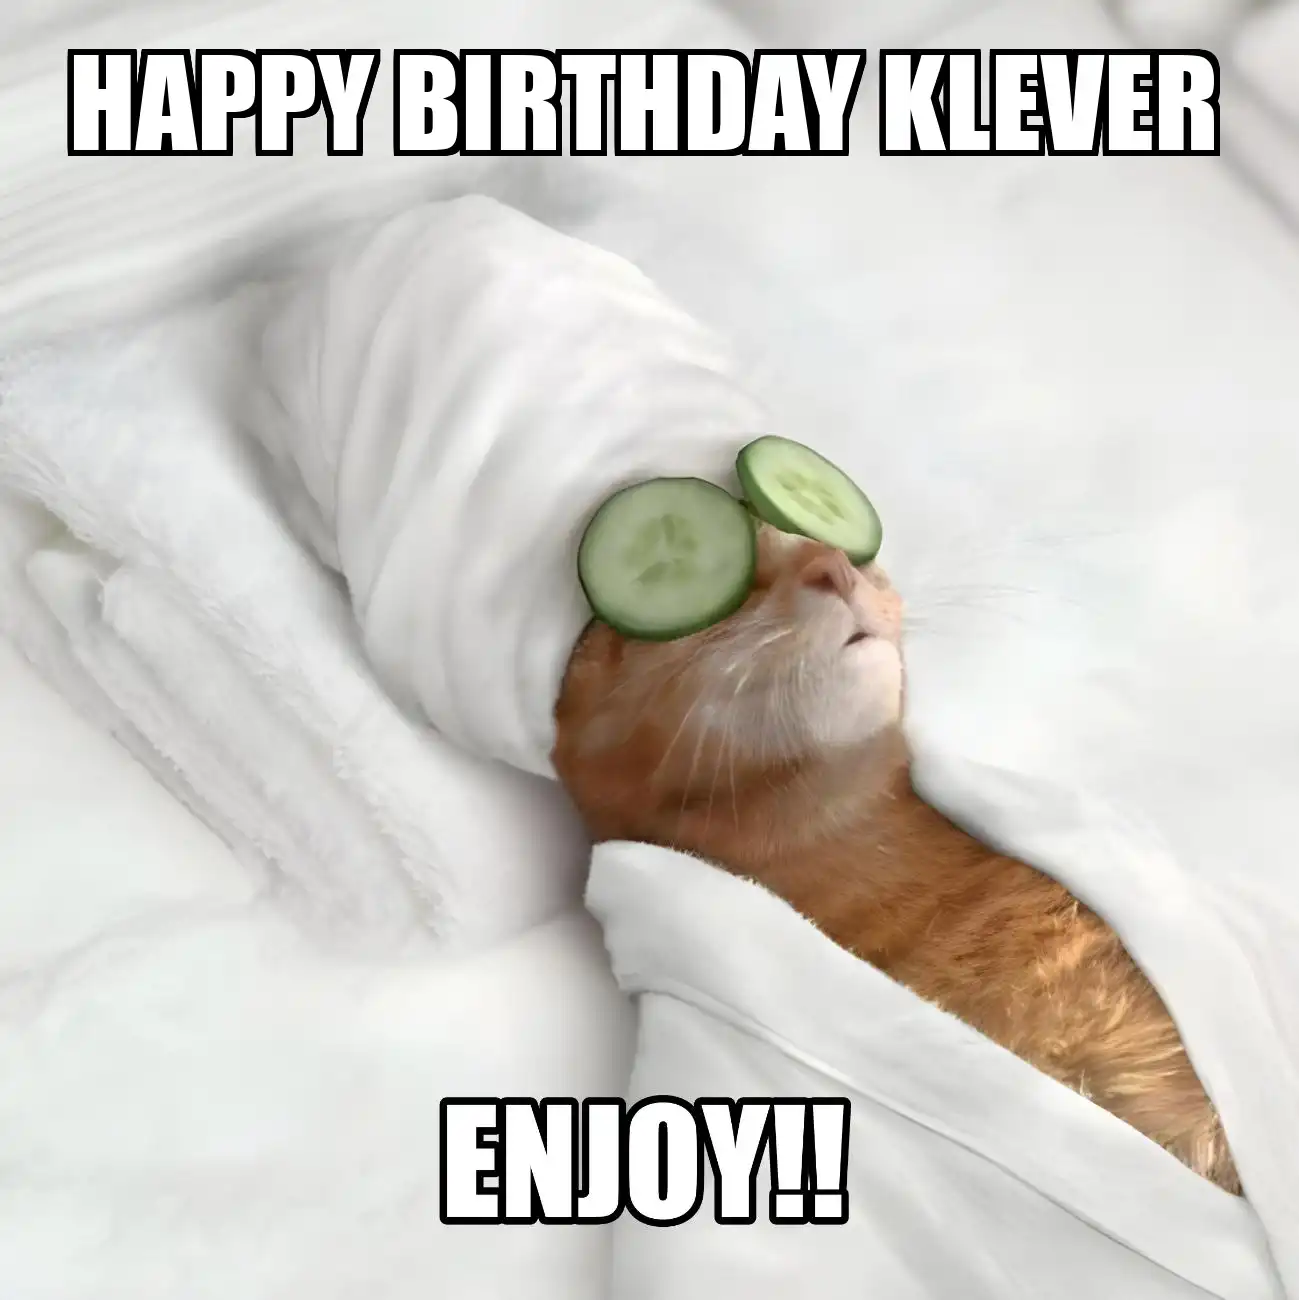 Happy Birthday Klever Enjoy Cat Meme